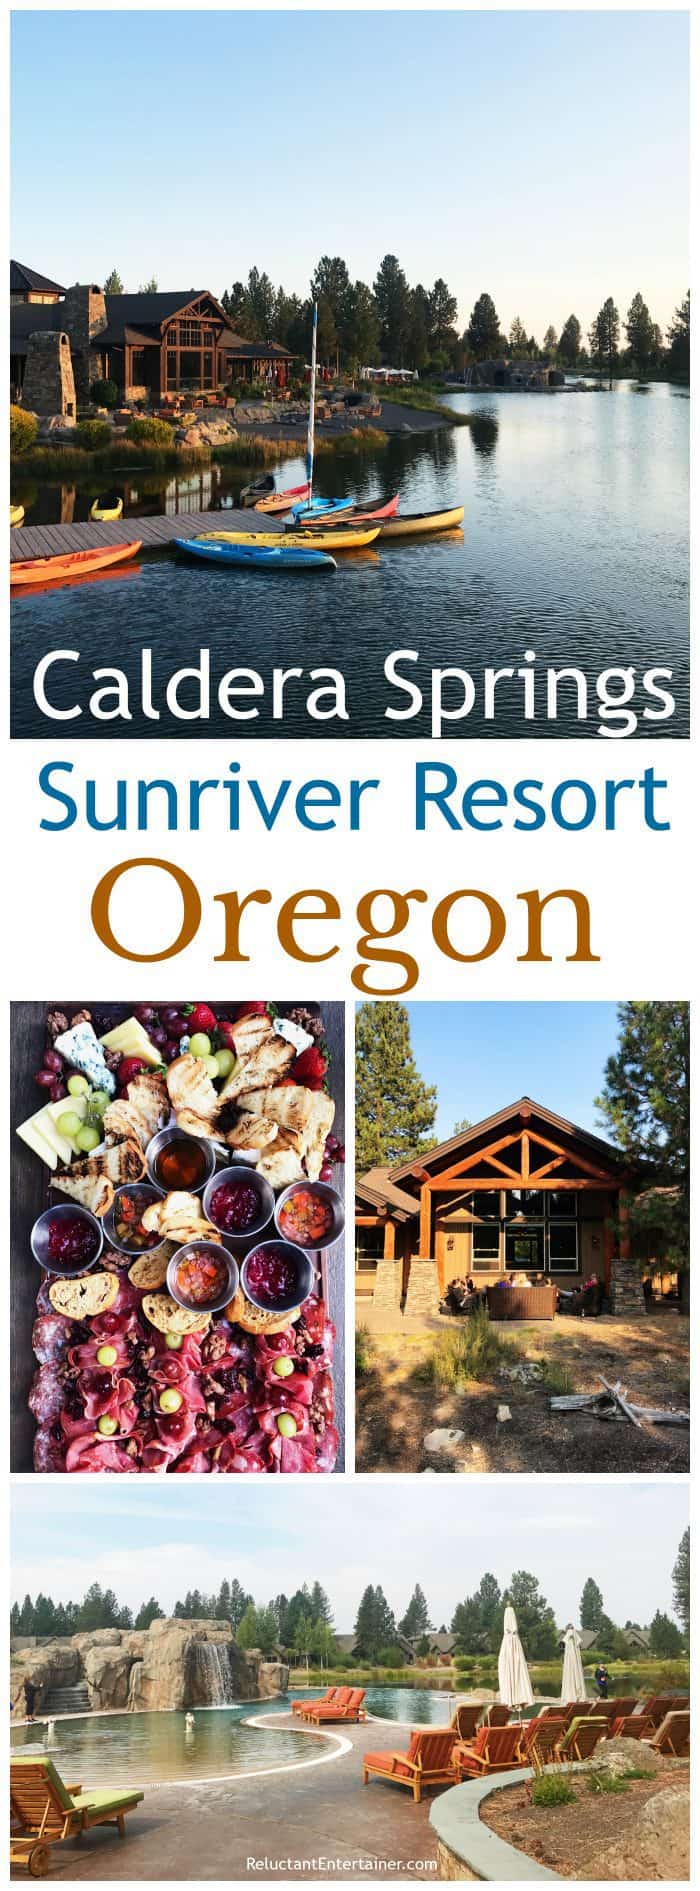 Caldera Springs in Sunriver Resort, Oregon